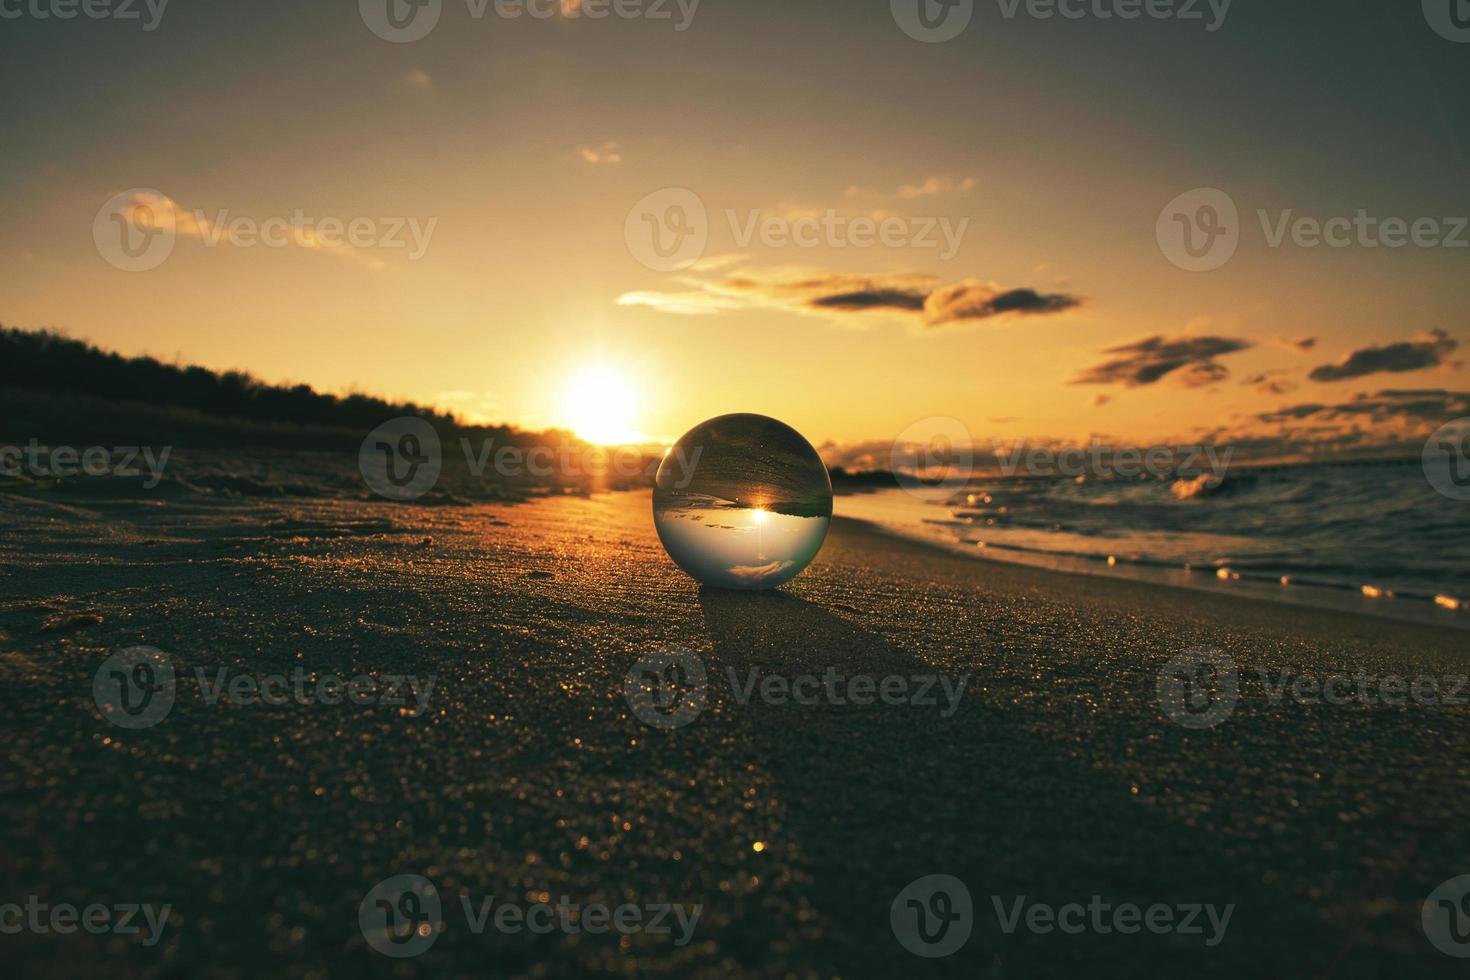 globe en verre sur la plage de la mer baltique en zingst dans lequel le paysage est représenté. photo